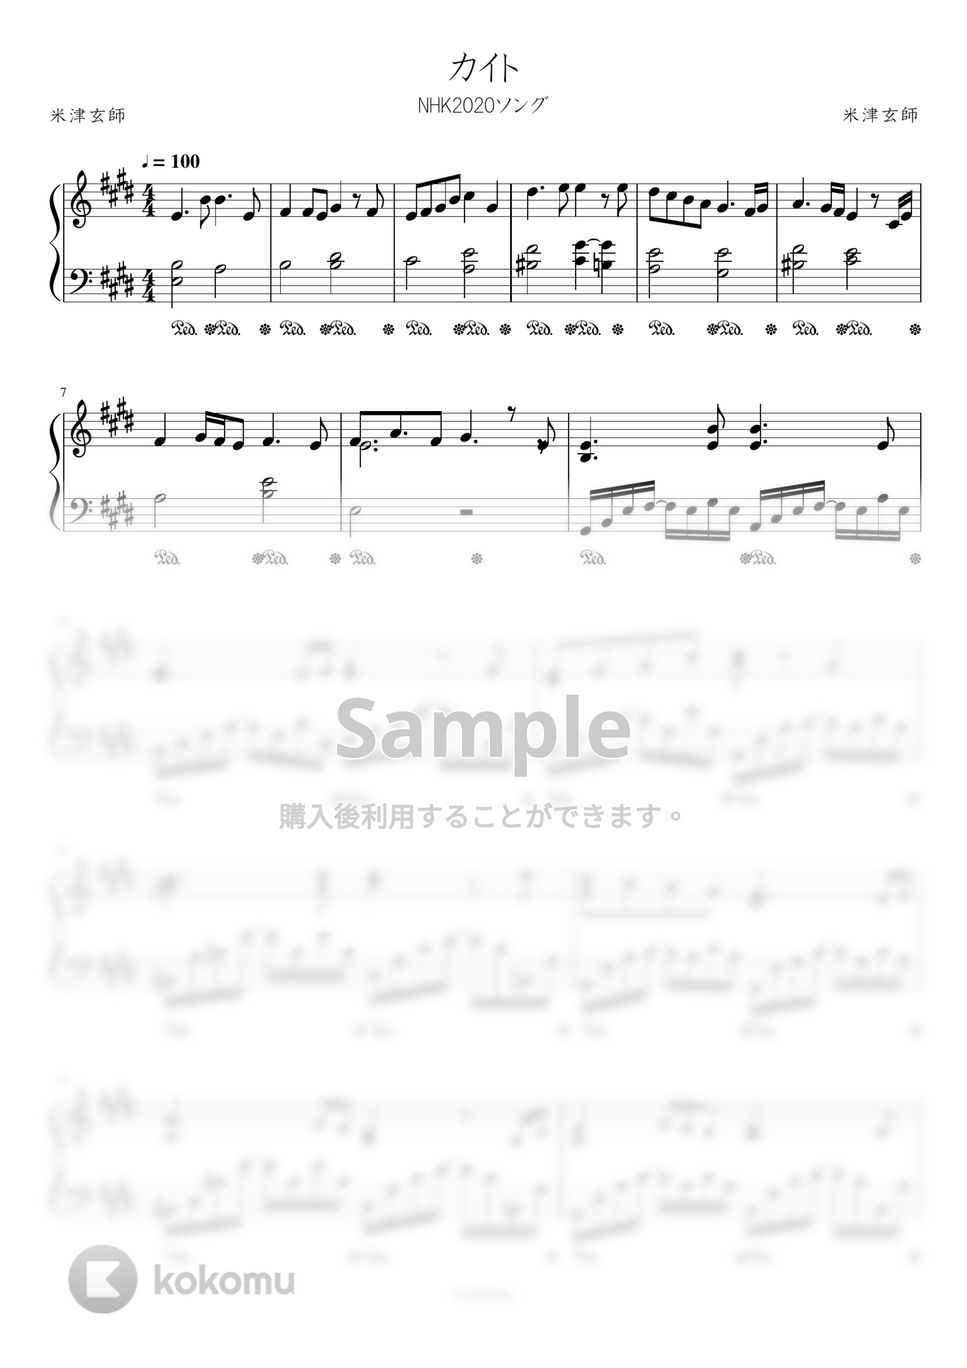 嵐 - カイト (NHK2020ソング) by Trohishima